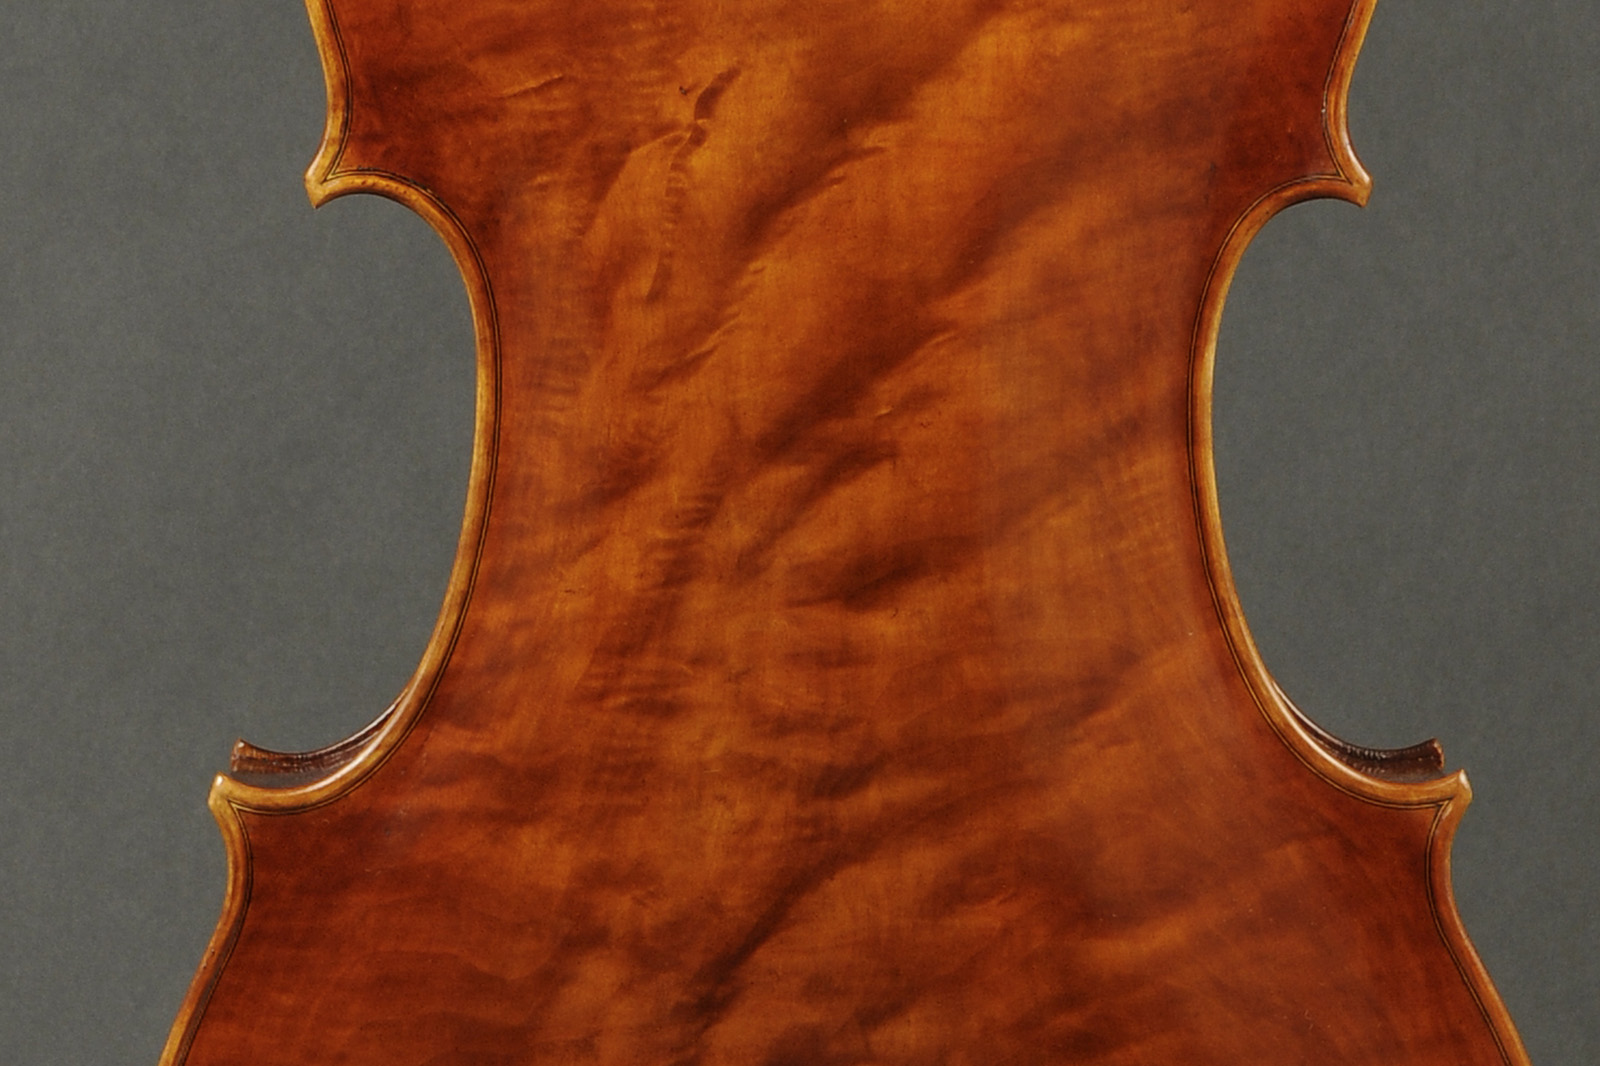 Antonio Stradivari Cremona 1730 “Feuermann“ “Fondo Unico“ - Image 4